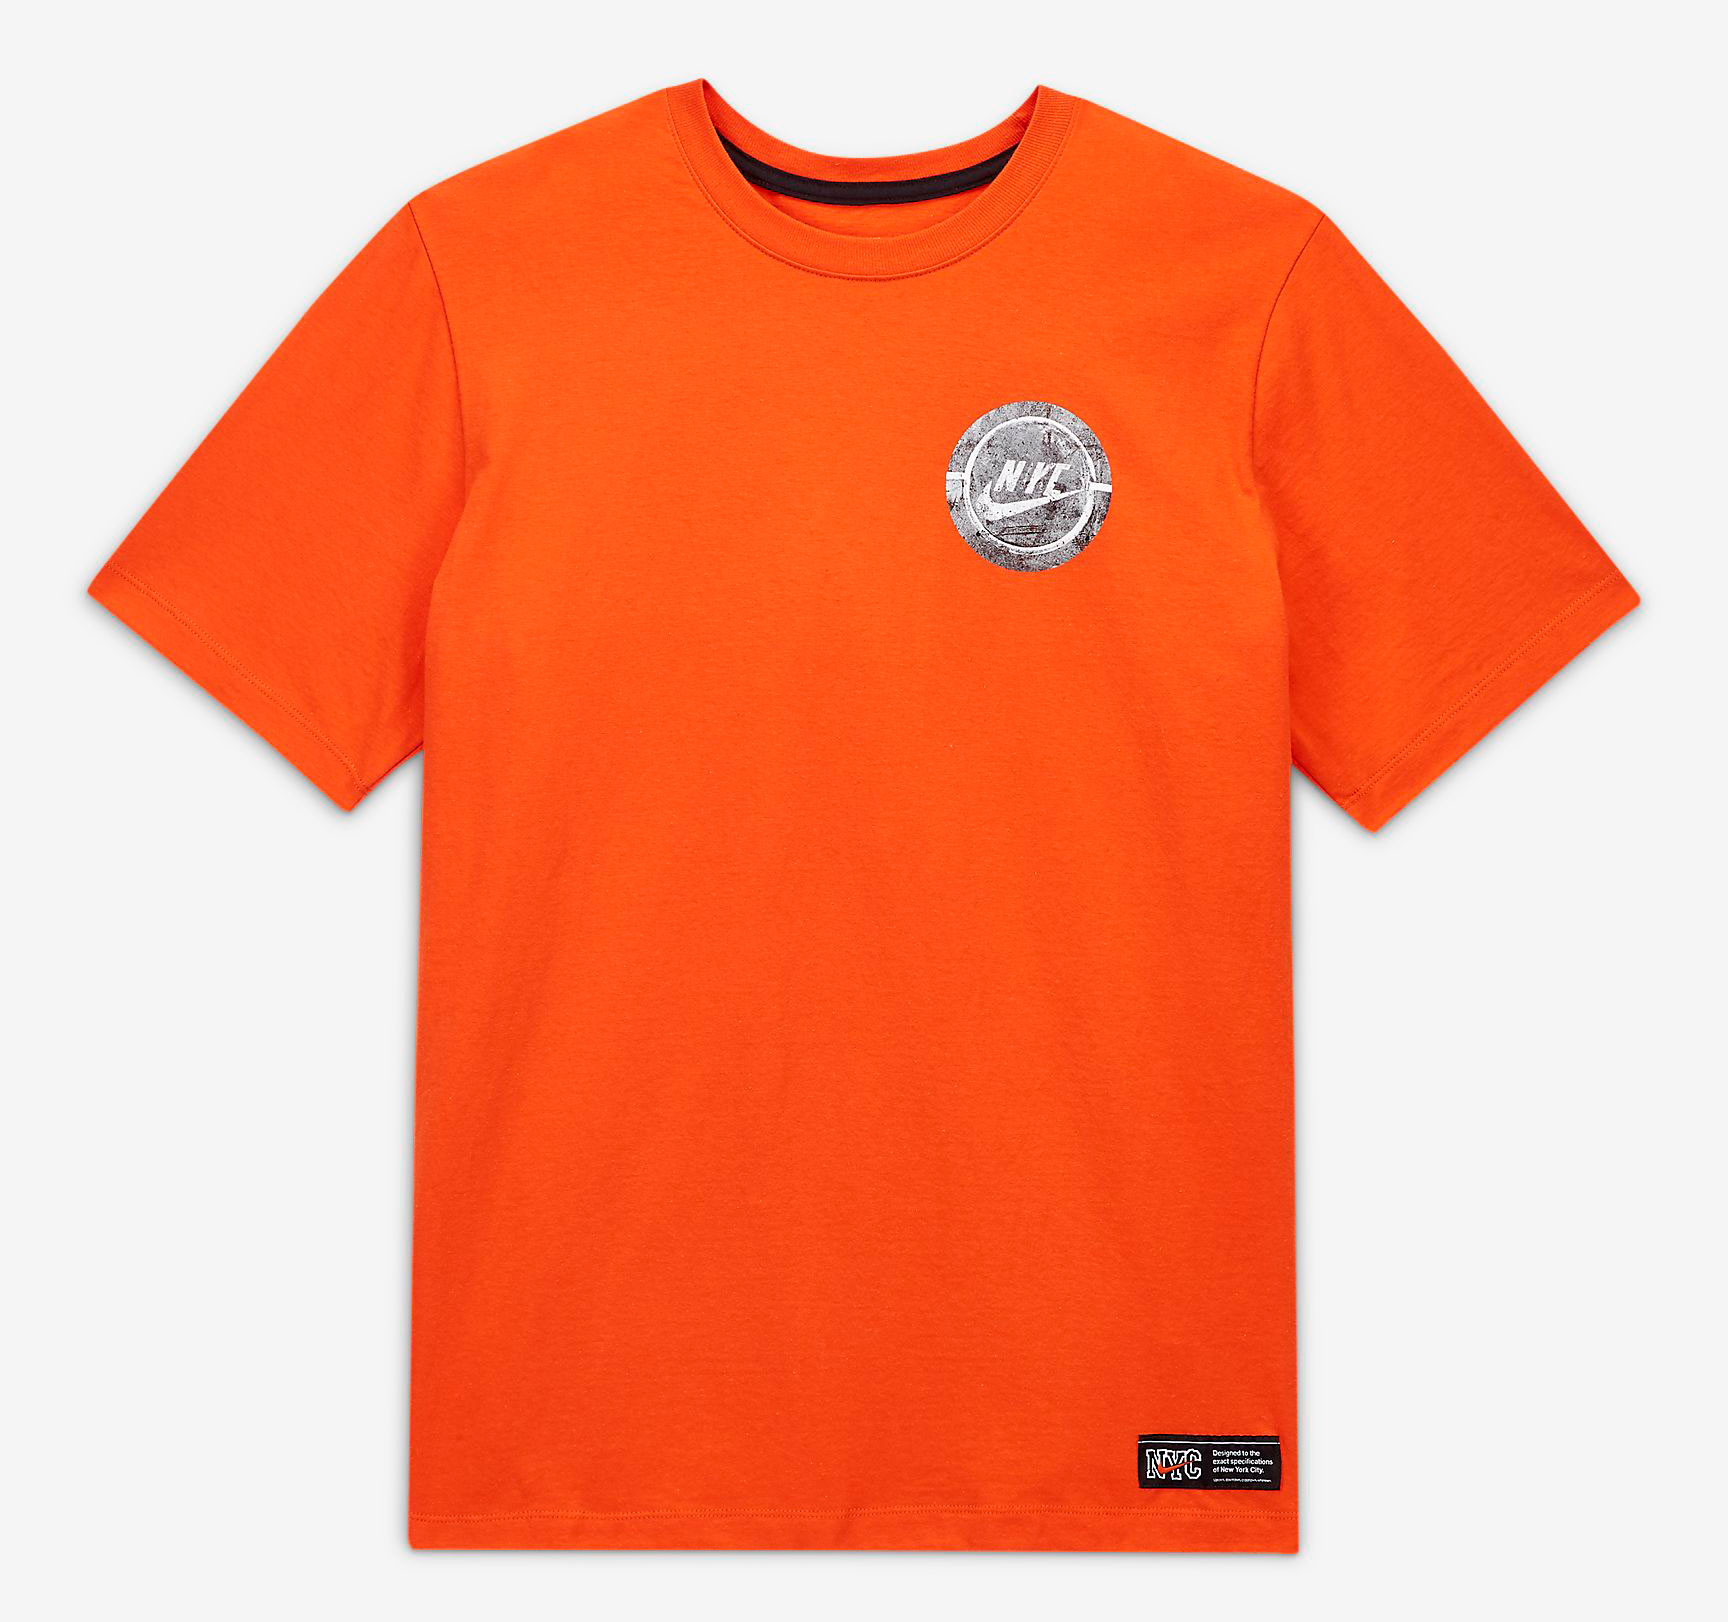 nike-air-force-1-ny-vs-ny-shirt-match-orange-1